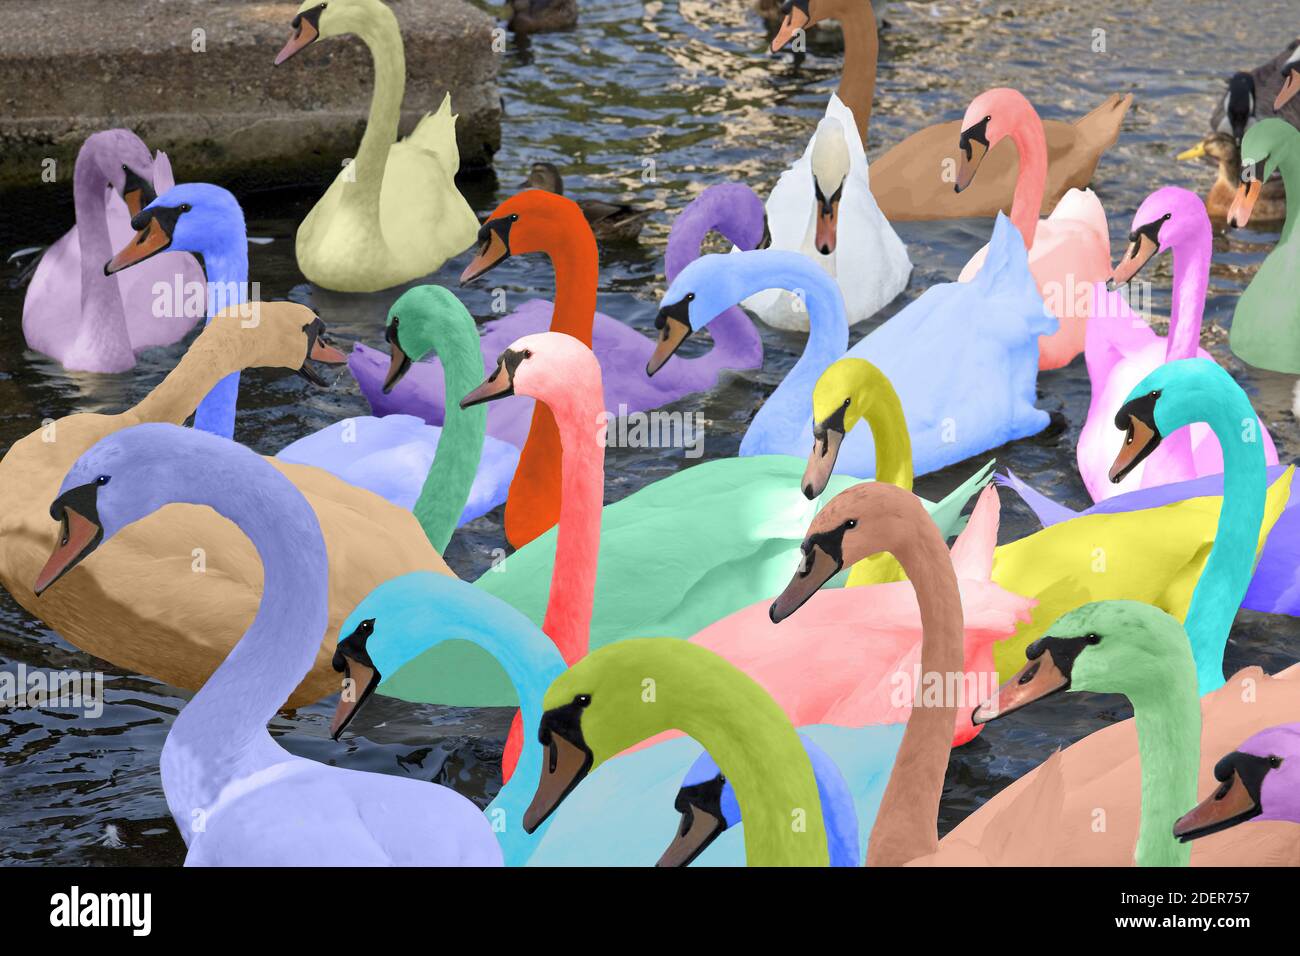 Un gruppo di cigni si riuniscono sulla riva del fiume sul Tamigi, Windsor, Inghilterra. Un cambiamento dei colori degli uccelli per dare un effetto artistico. Foto Stock